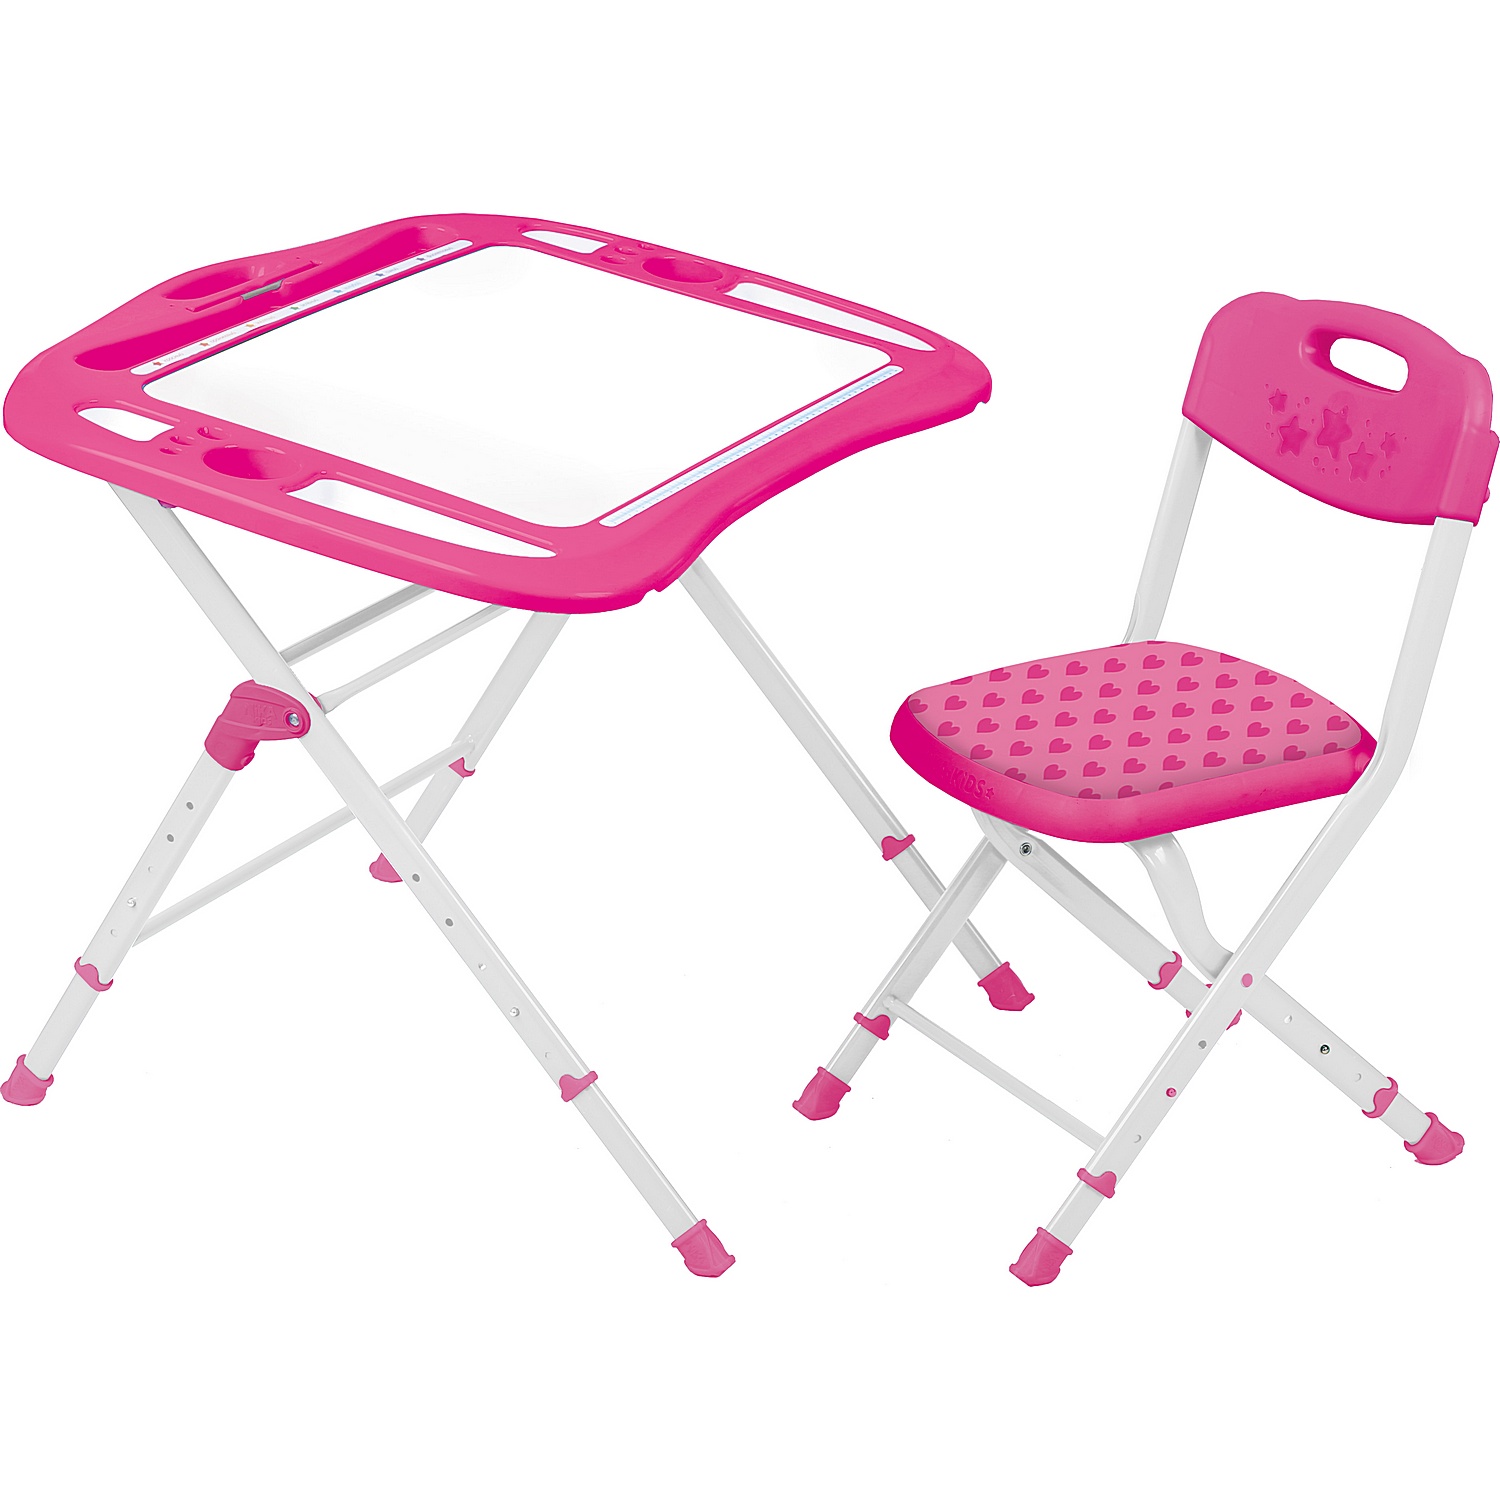 Комплект детской мебели InHome стол-парта и мягкий стульчик - фото 15